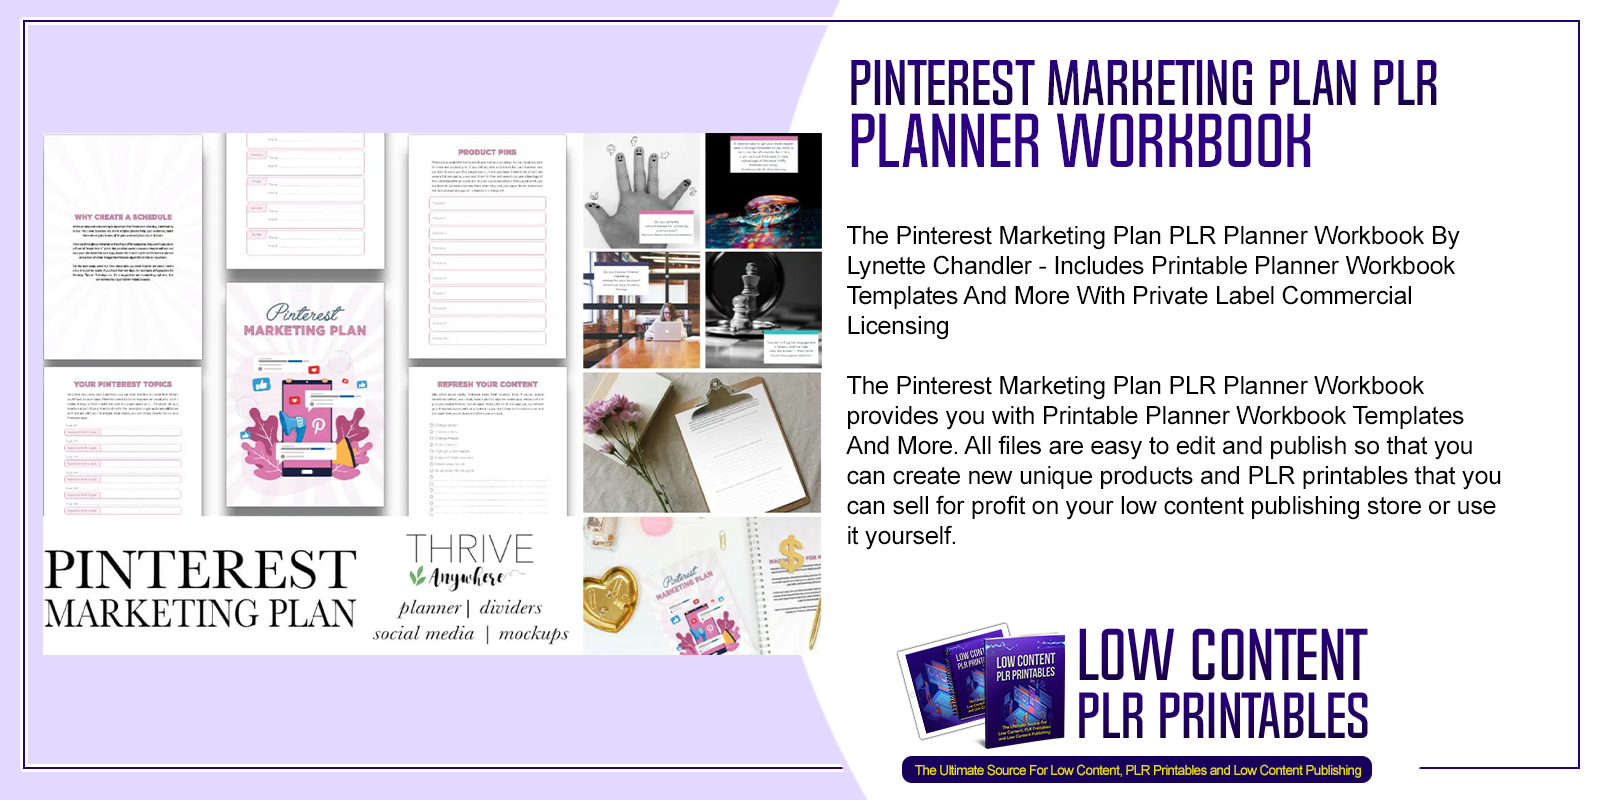 Pinterest Marketing Plan PLR Planner Workbook